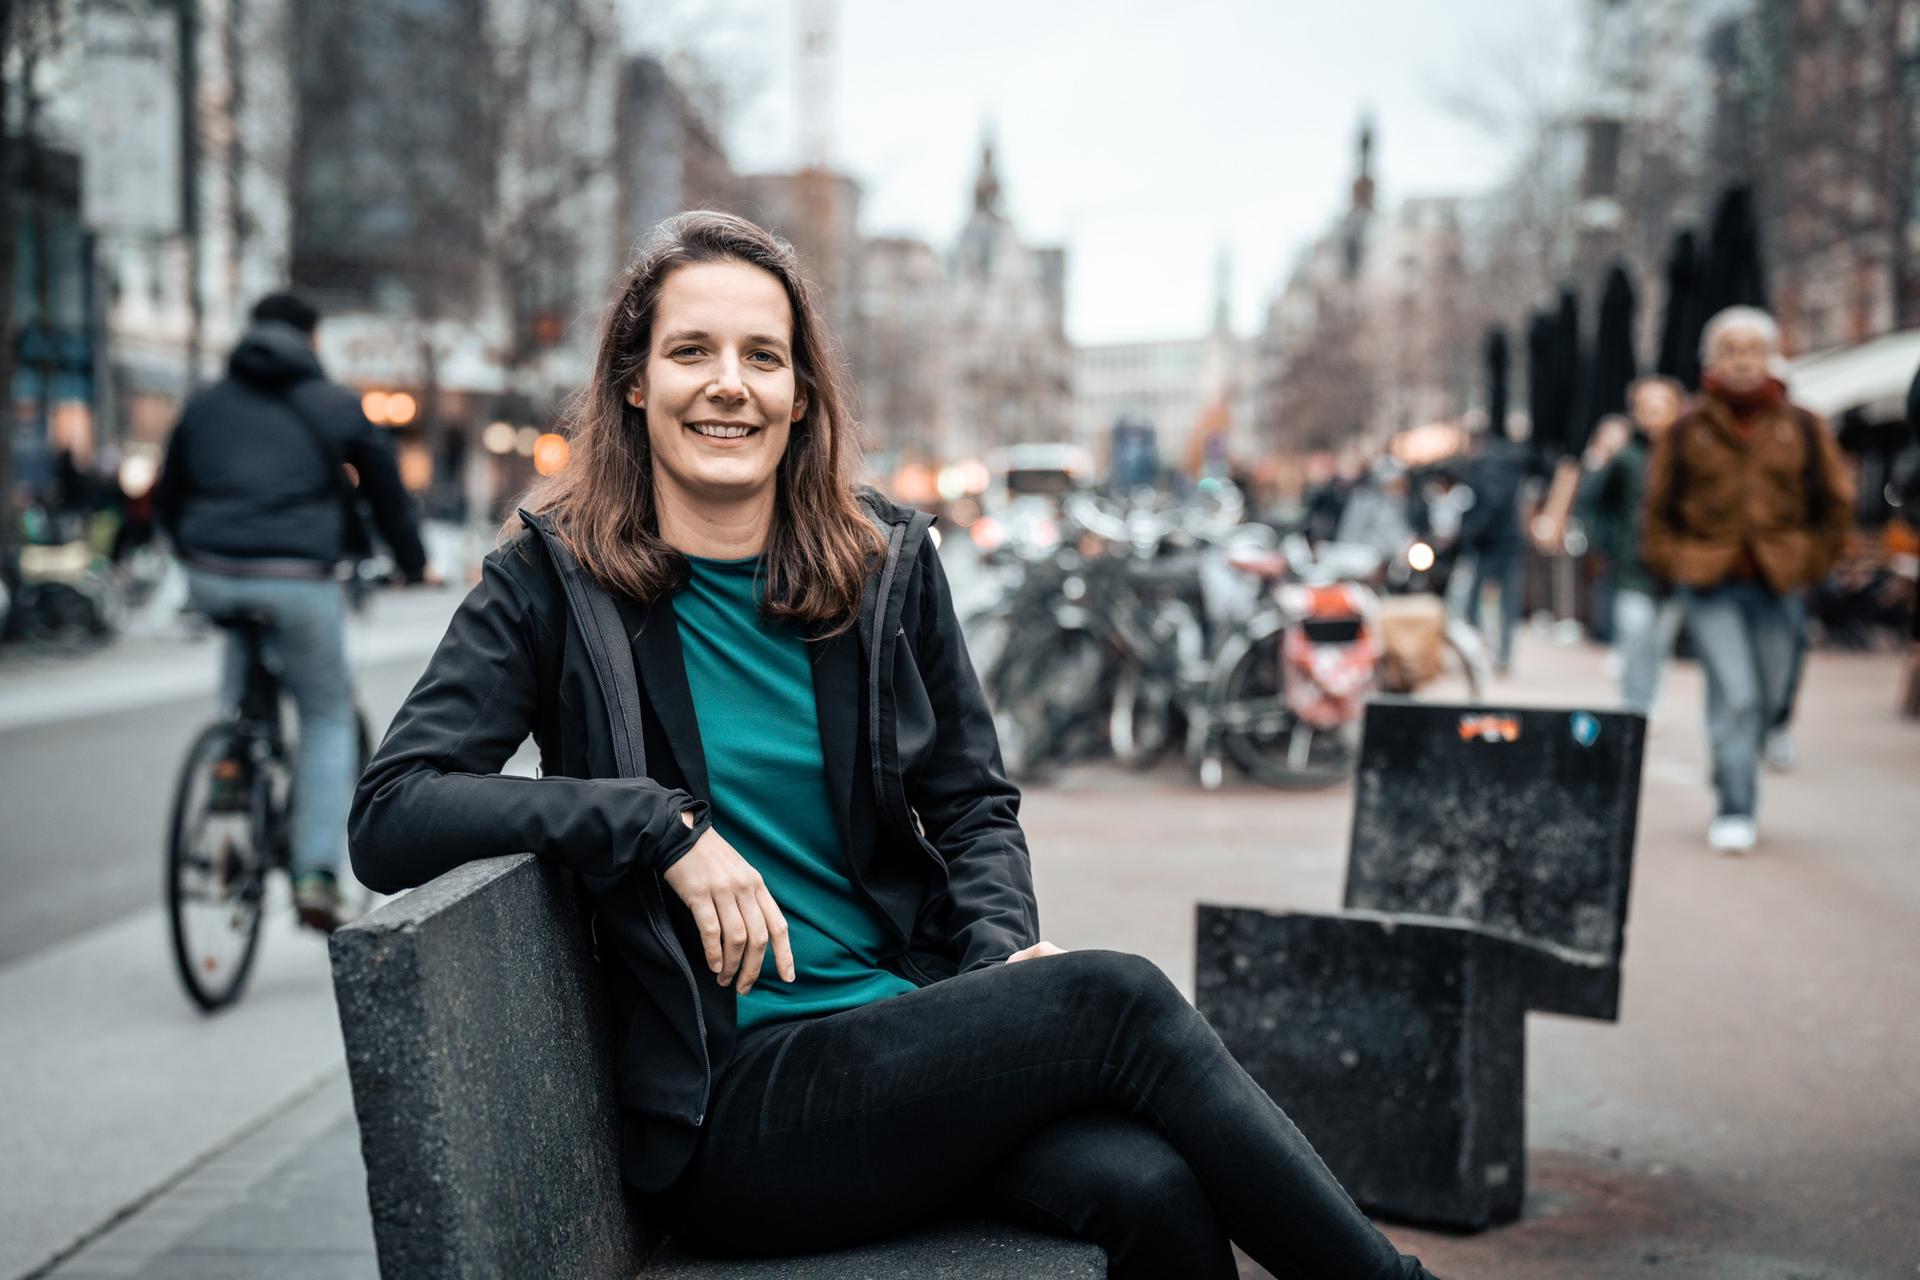 Anne Delespaul verkozen als nieuwe voorzitter PVDA Antwerpen: “we gaan meer plaats geven aan arbeiders en jongeren”